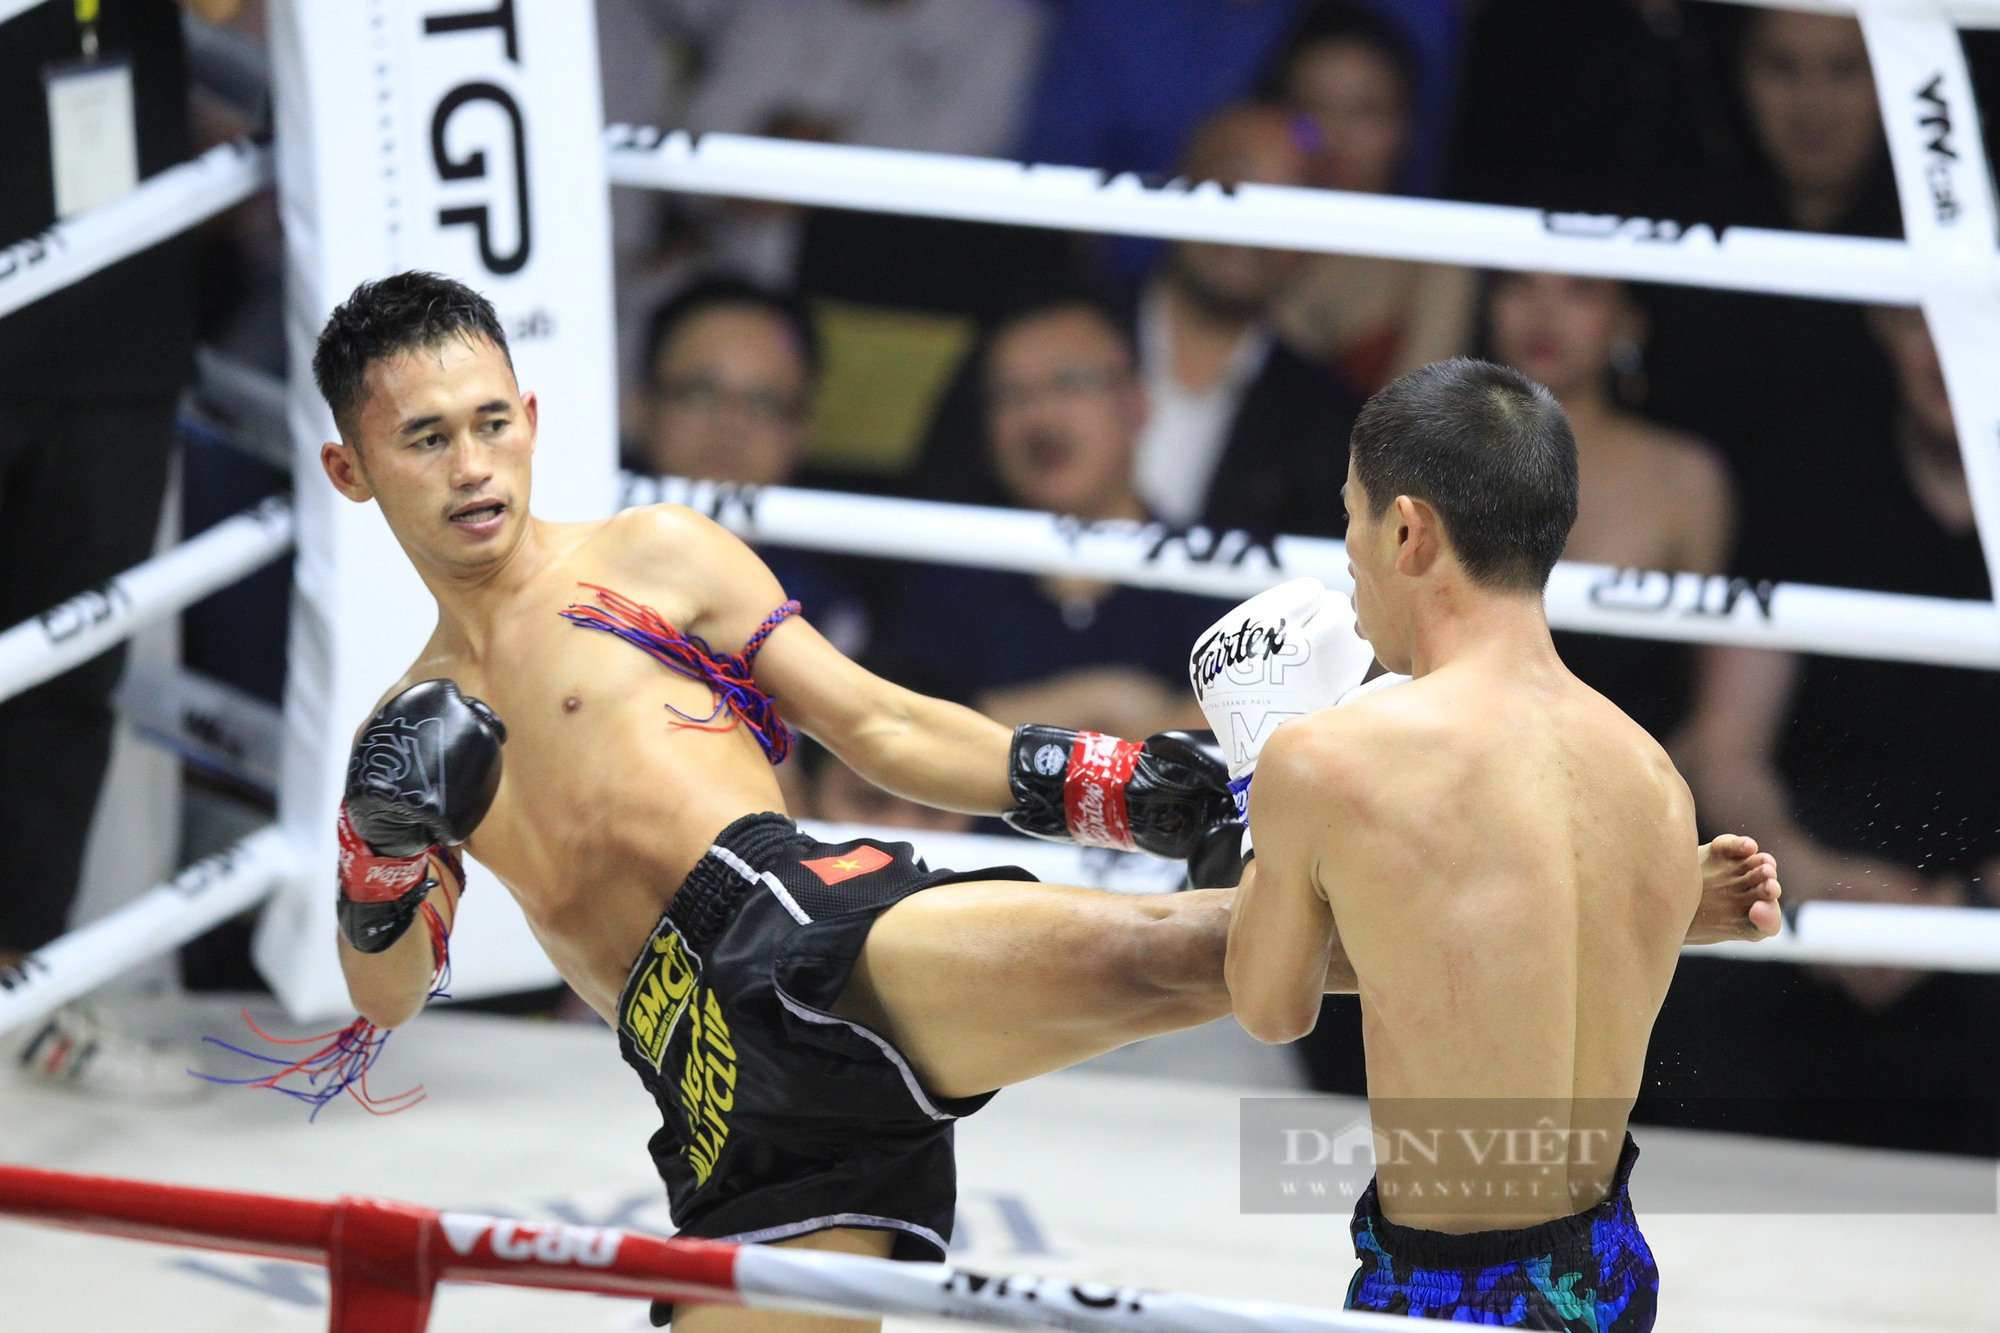 Liên tục cho võ sĩ Thái đo đài, nhà vô địch SEA Games Huỳnh Văn Tuấn khiến khán giả phấn khích - Ảnh 3.